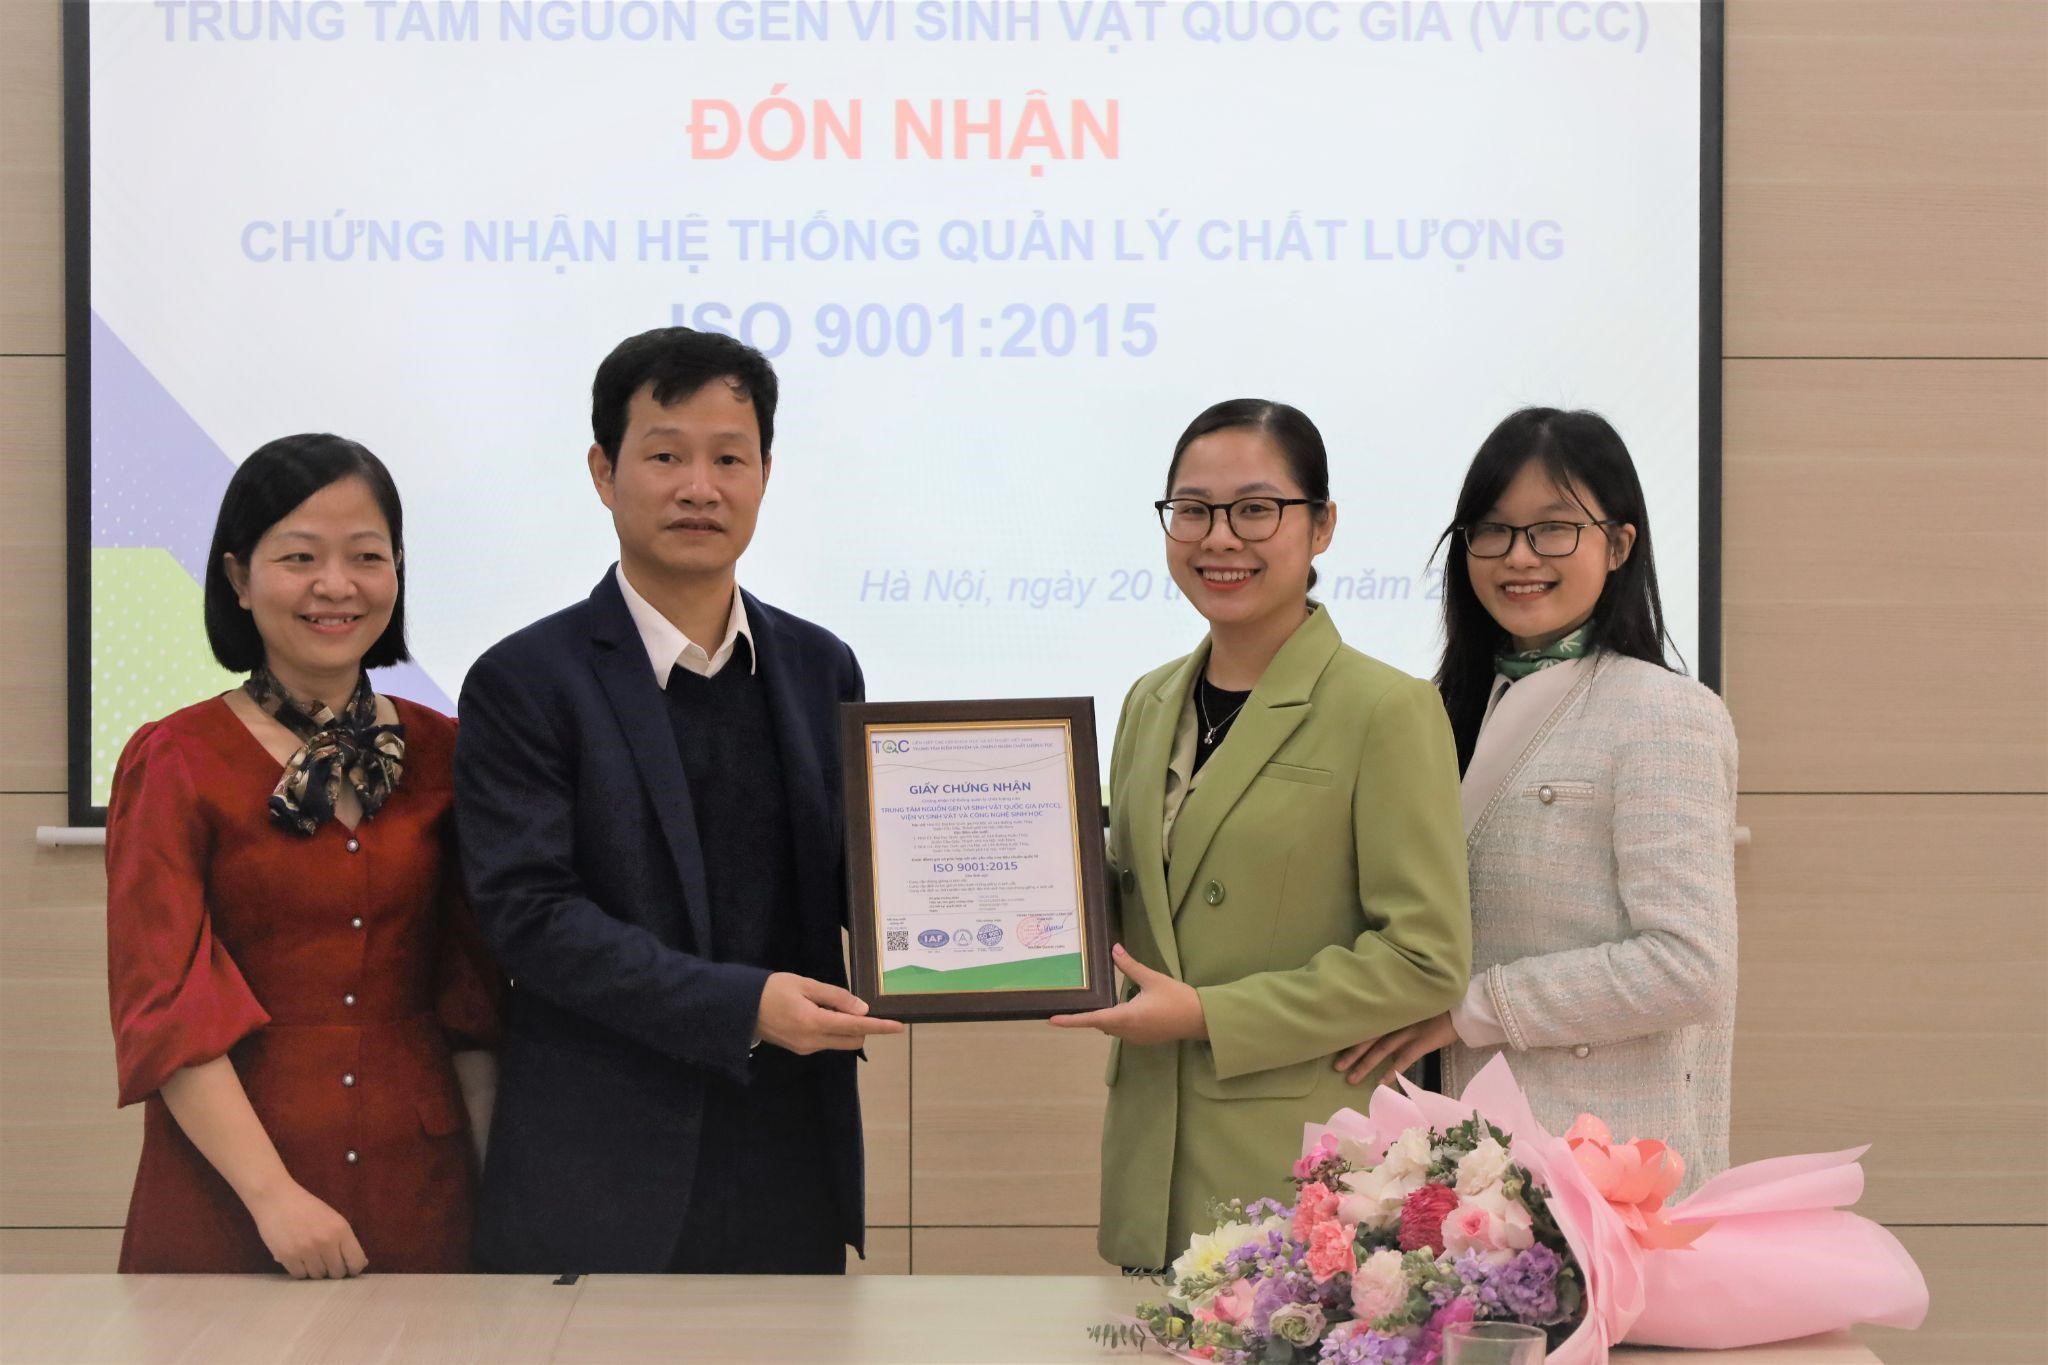 TQC trao chứng nhận ISO 9001:2015 cho Trung Tâm Nguồn Gen Vi Sinh Quốc Gia Năm 2022 | Uy Tín - Tốt Đẹp
